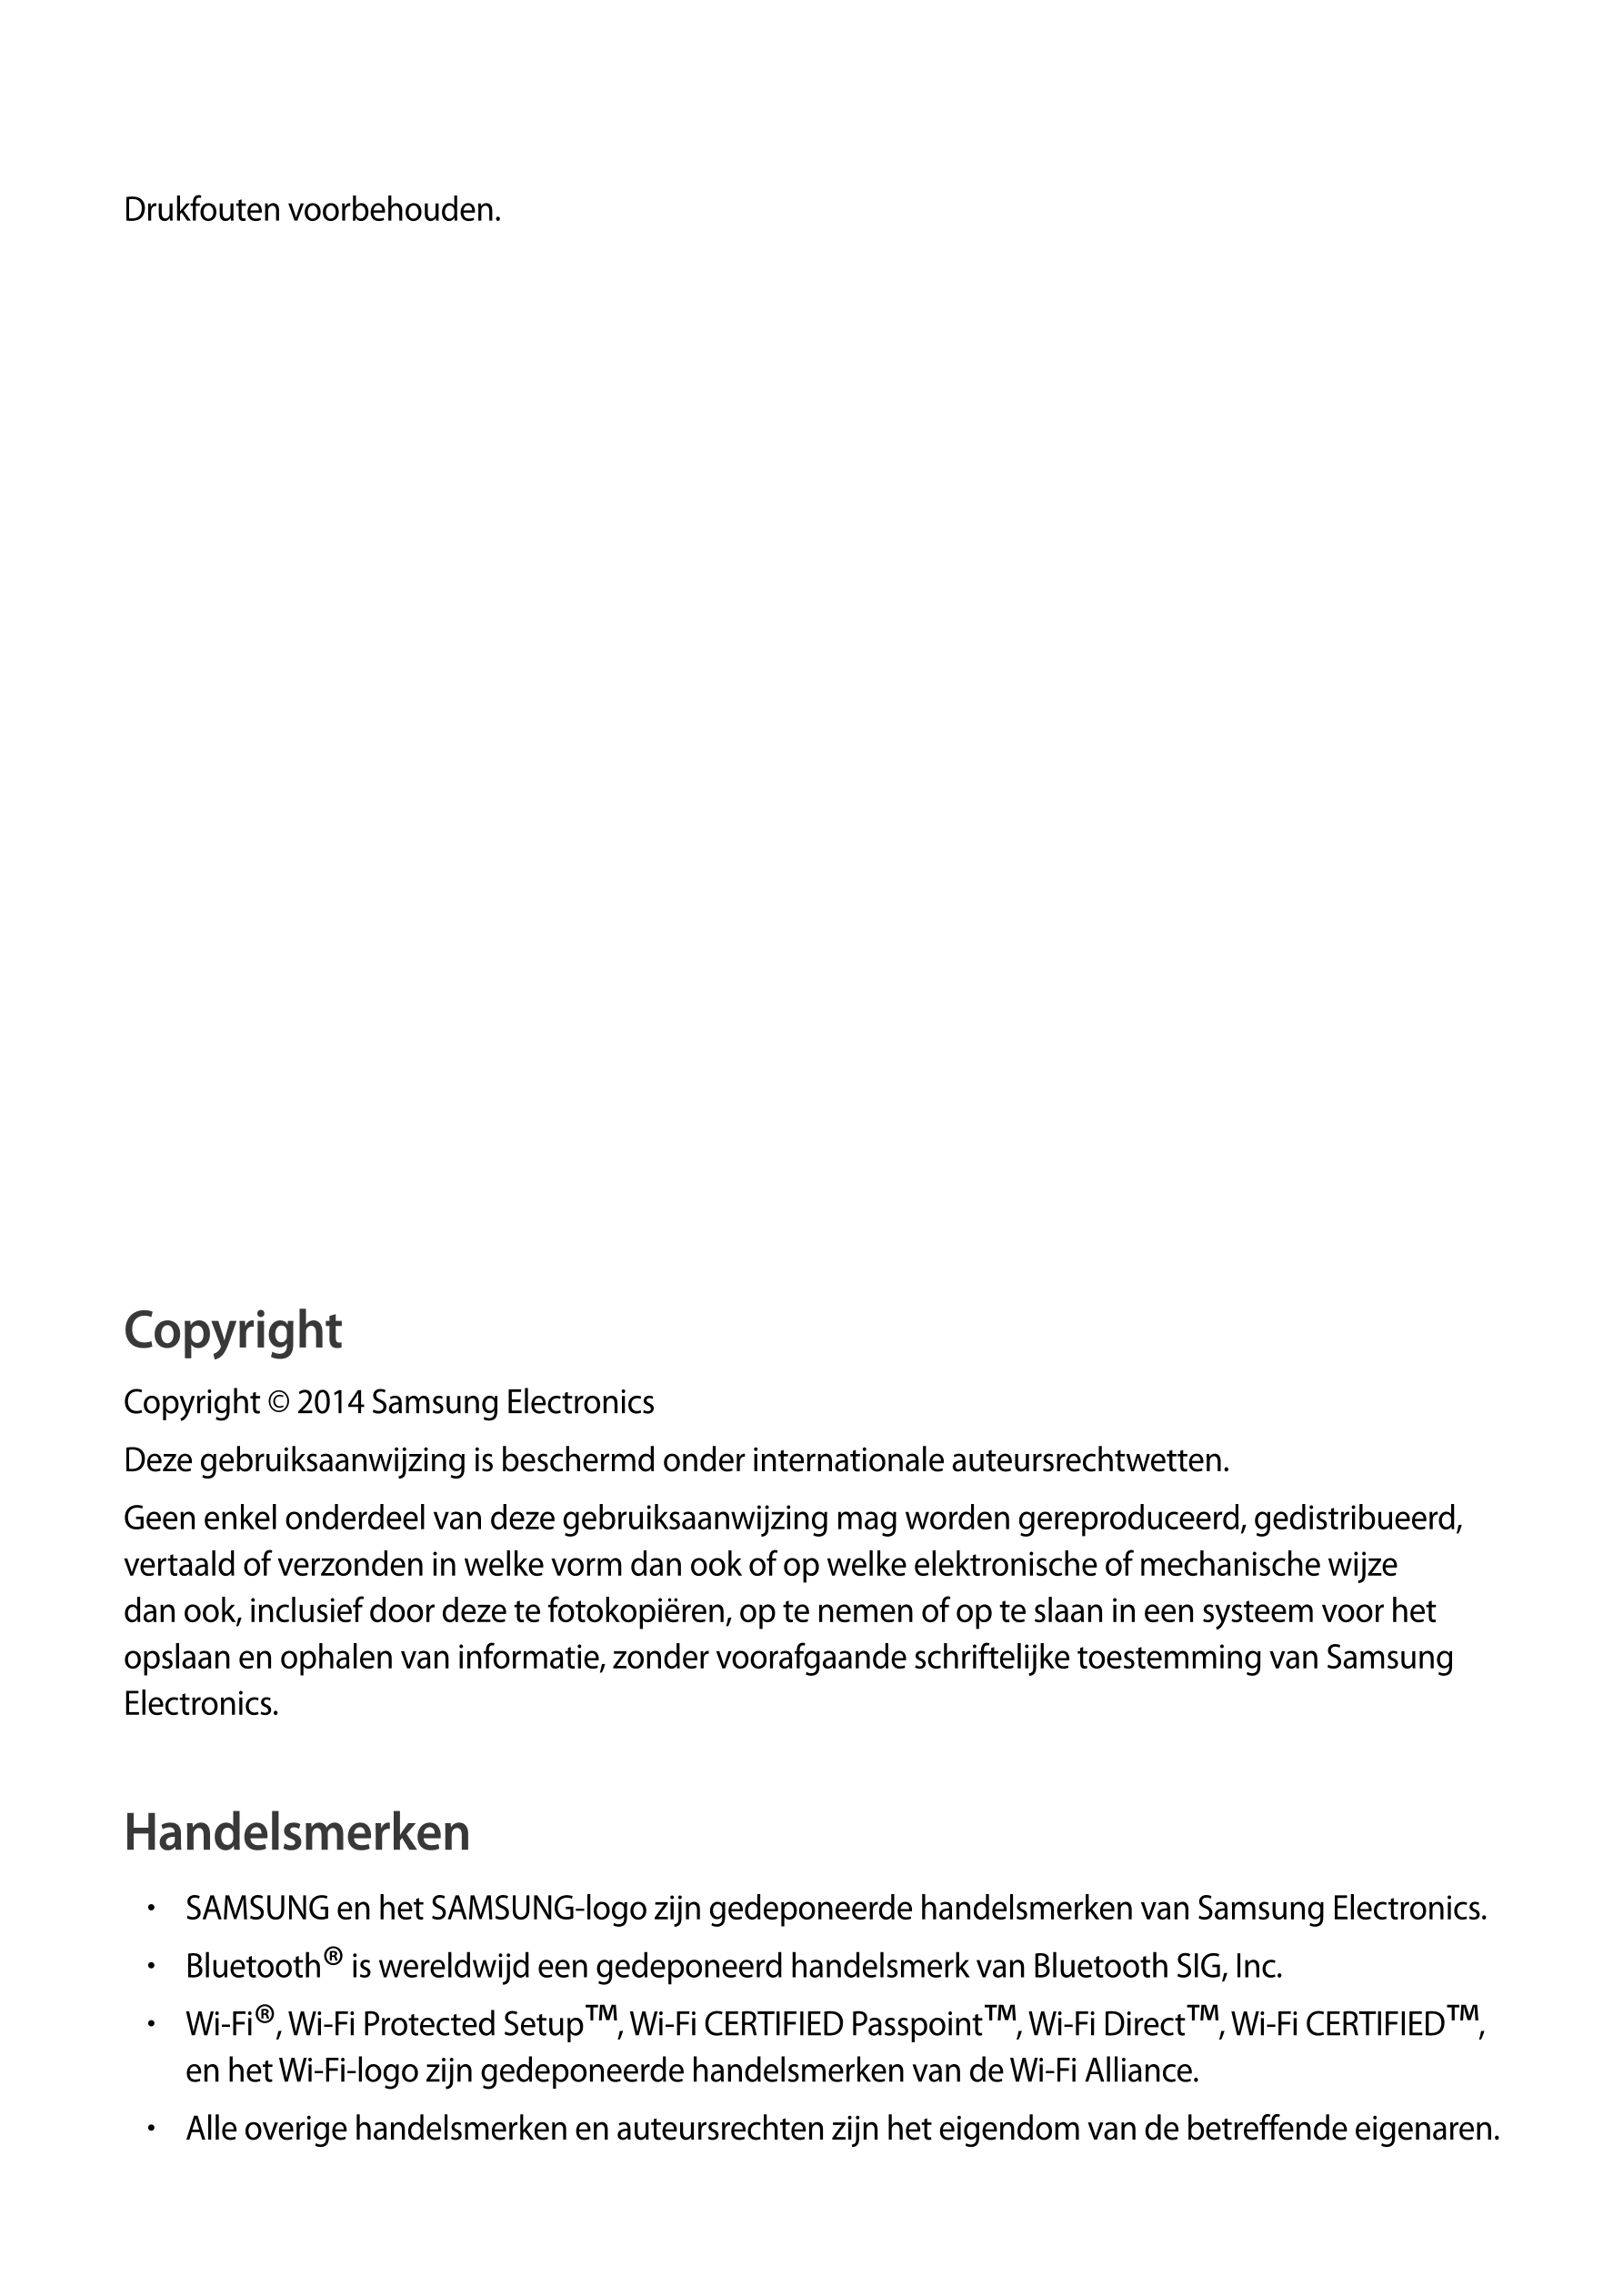 Drukfouten voorbehouden.
Copyright
Copyright © 2014 Samsung Electronics
Deze gebruiksaanwijzing is beschermd onder international